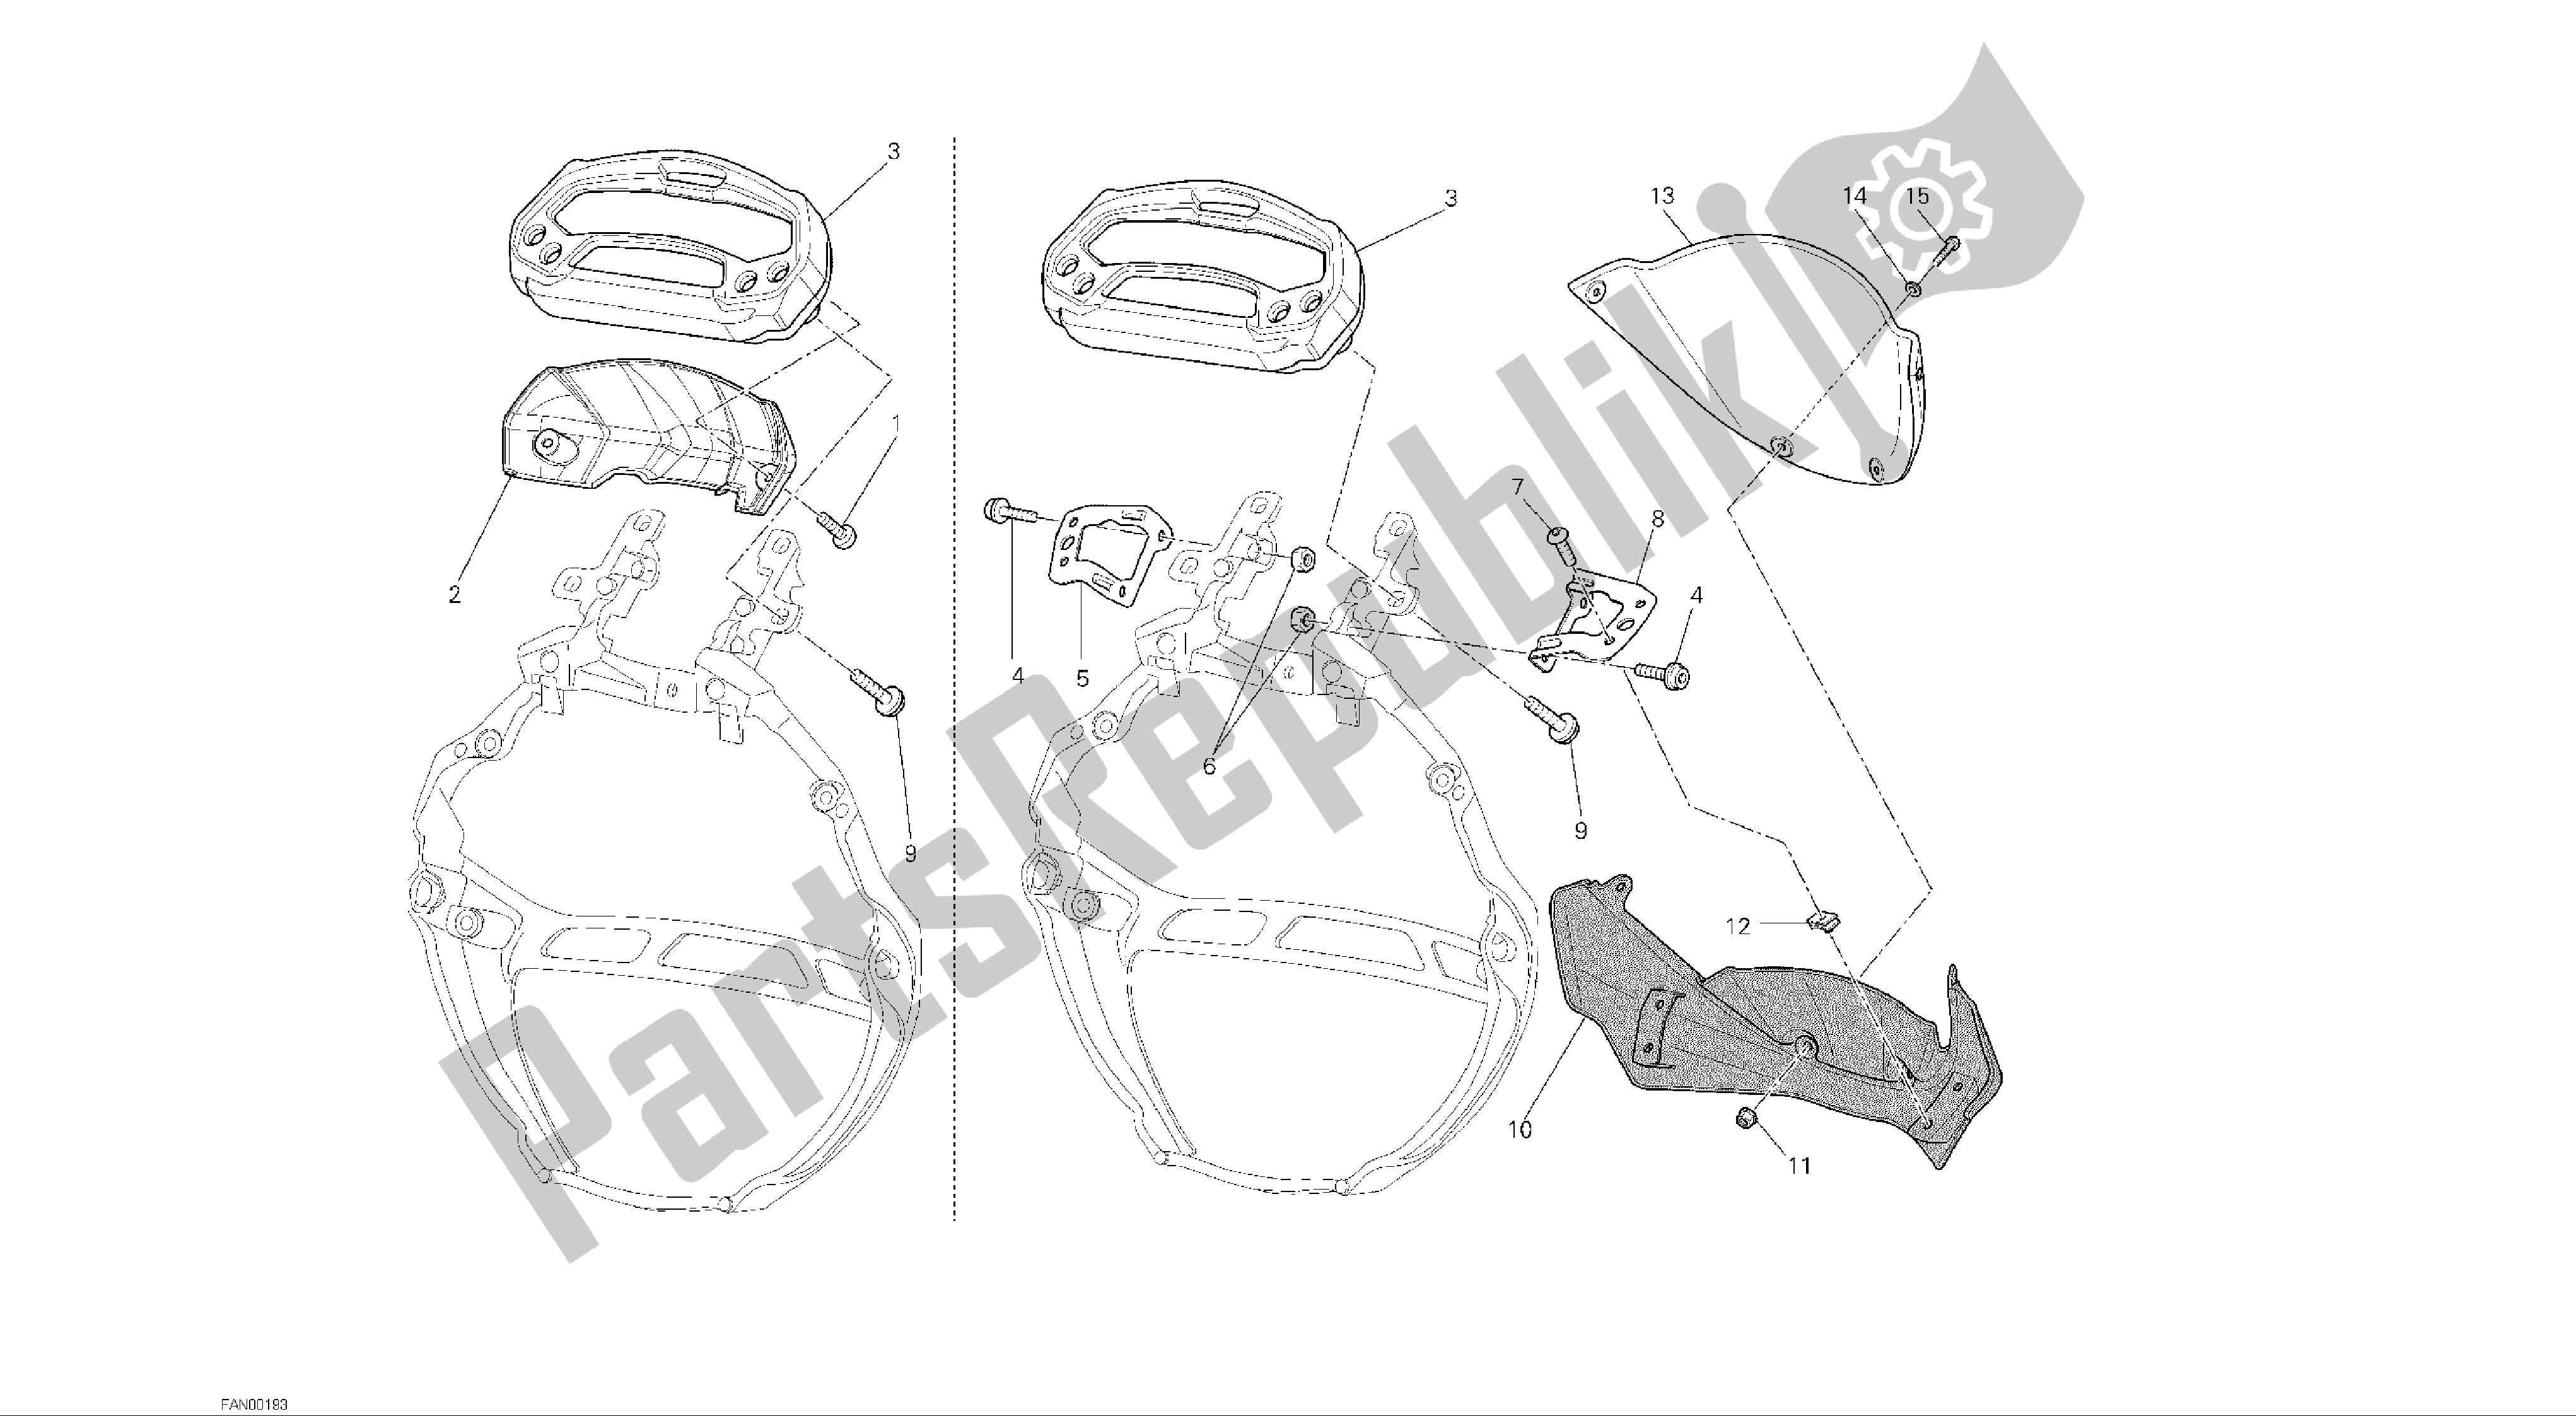 Alle onderdelen voor de Tekening 021 - Meter [mod: M696 Abs, M696 + Abs; Xst: Aus, Eur, Jap] Groep Elektrisch van de Ducati Monster ABS 696 2014